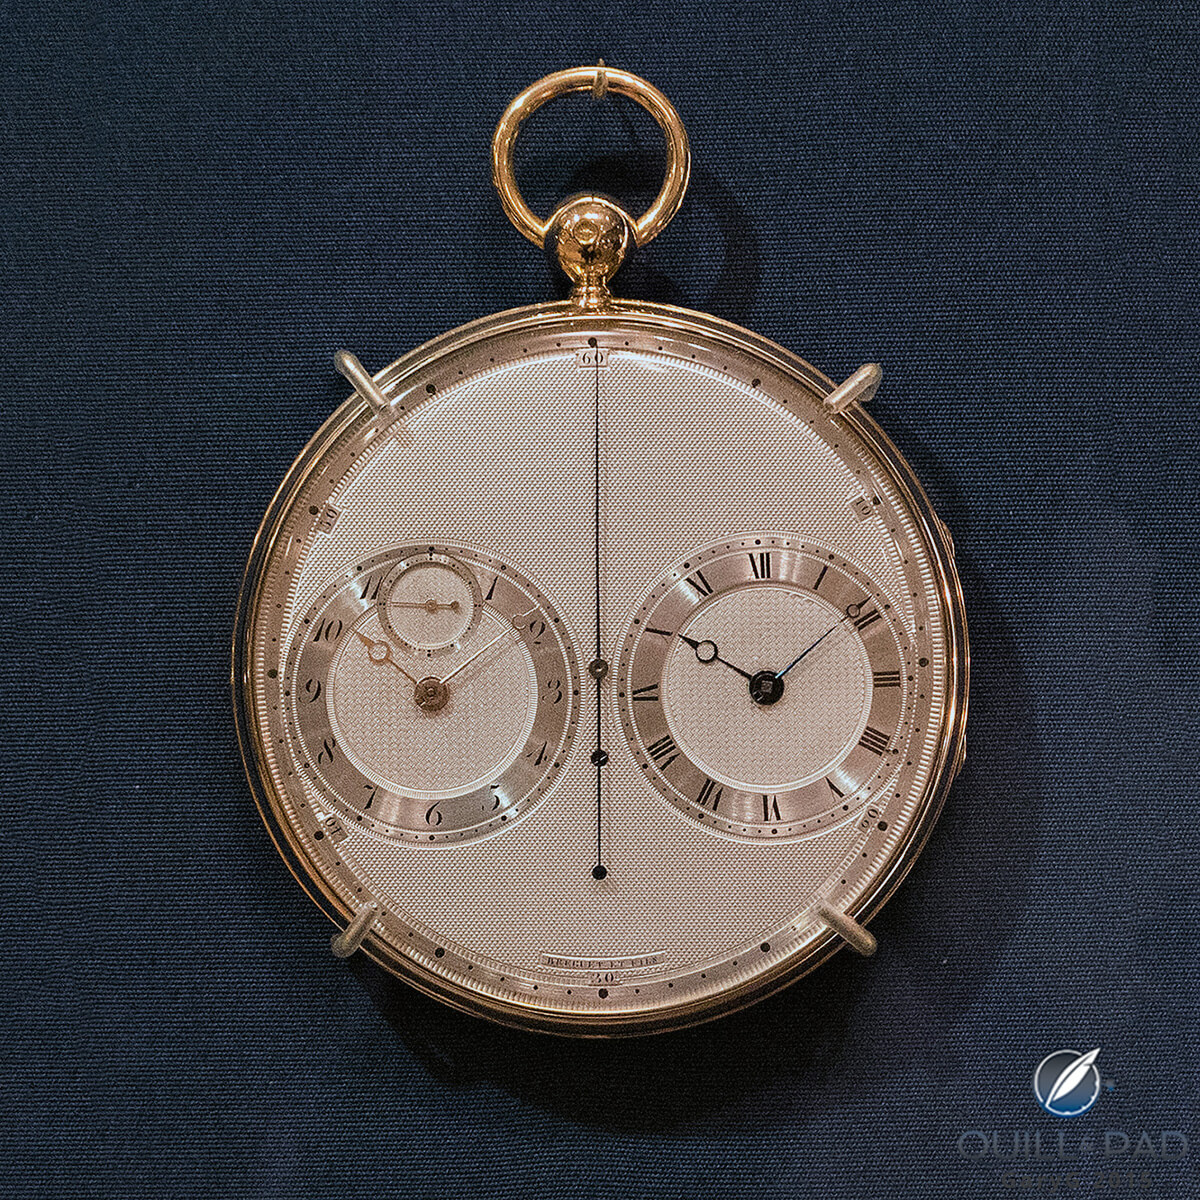 Resonance-type Breguet watch, 1814